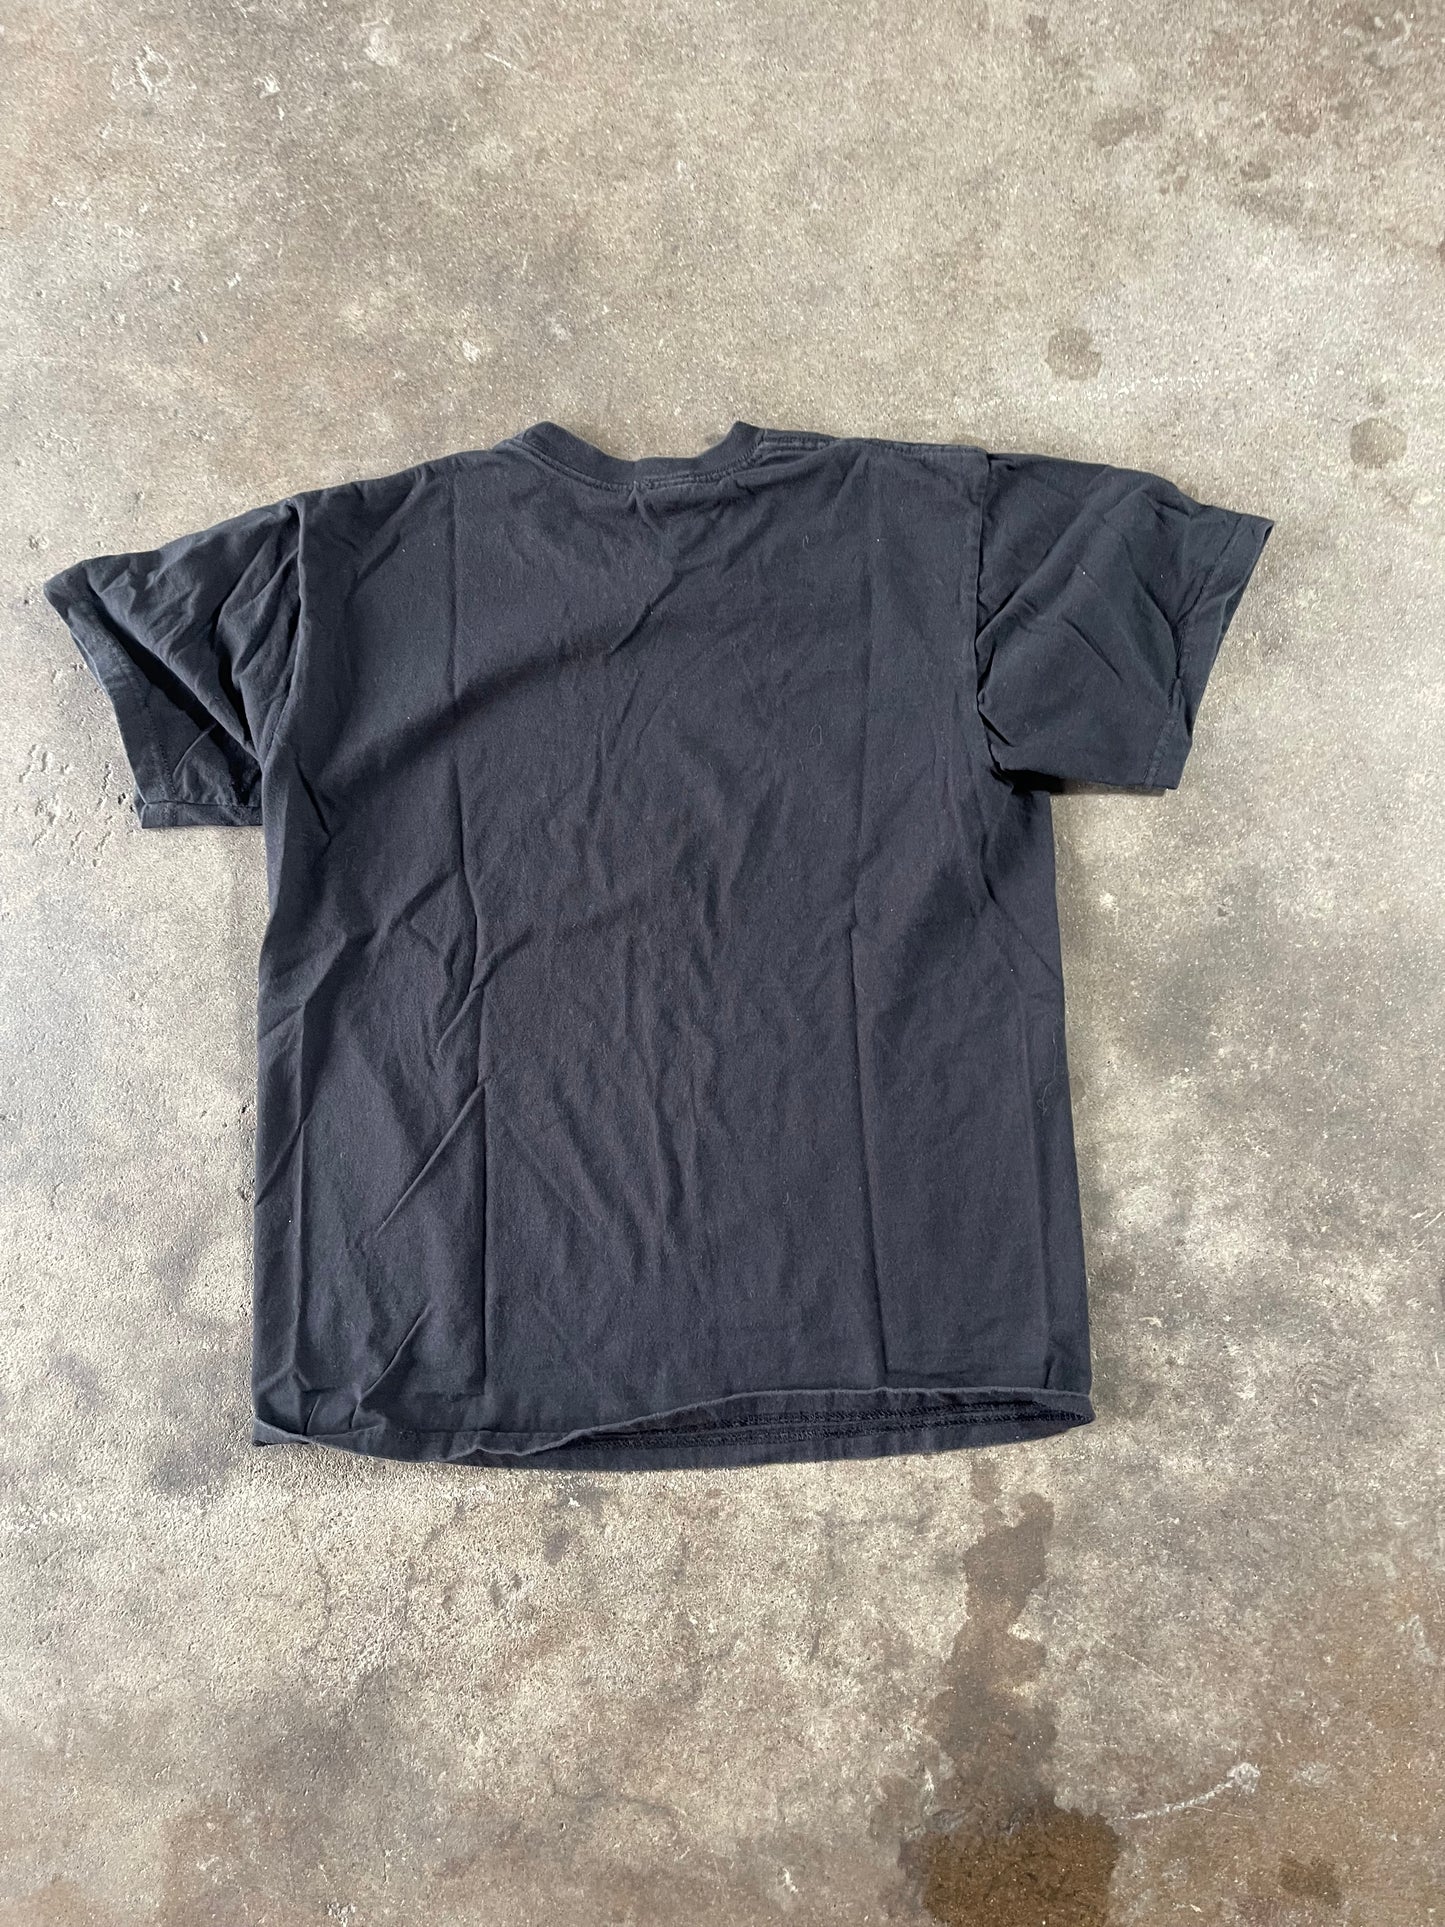 Black Band T Shirt Medium